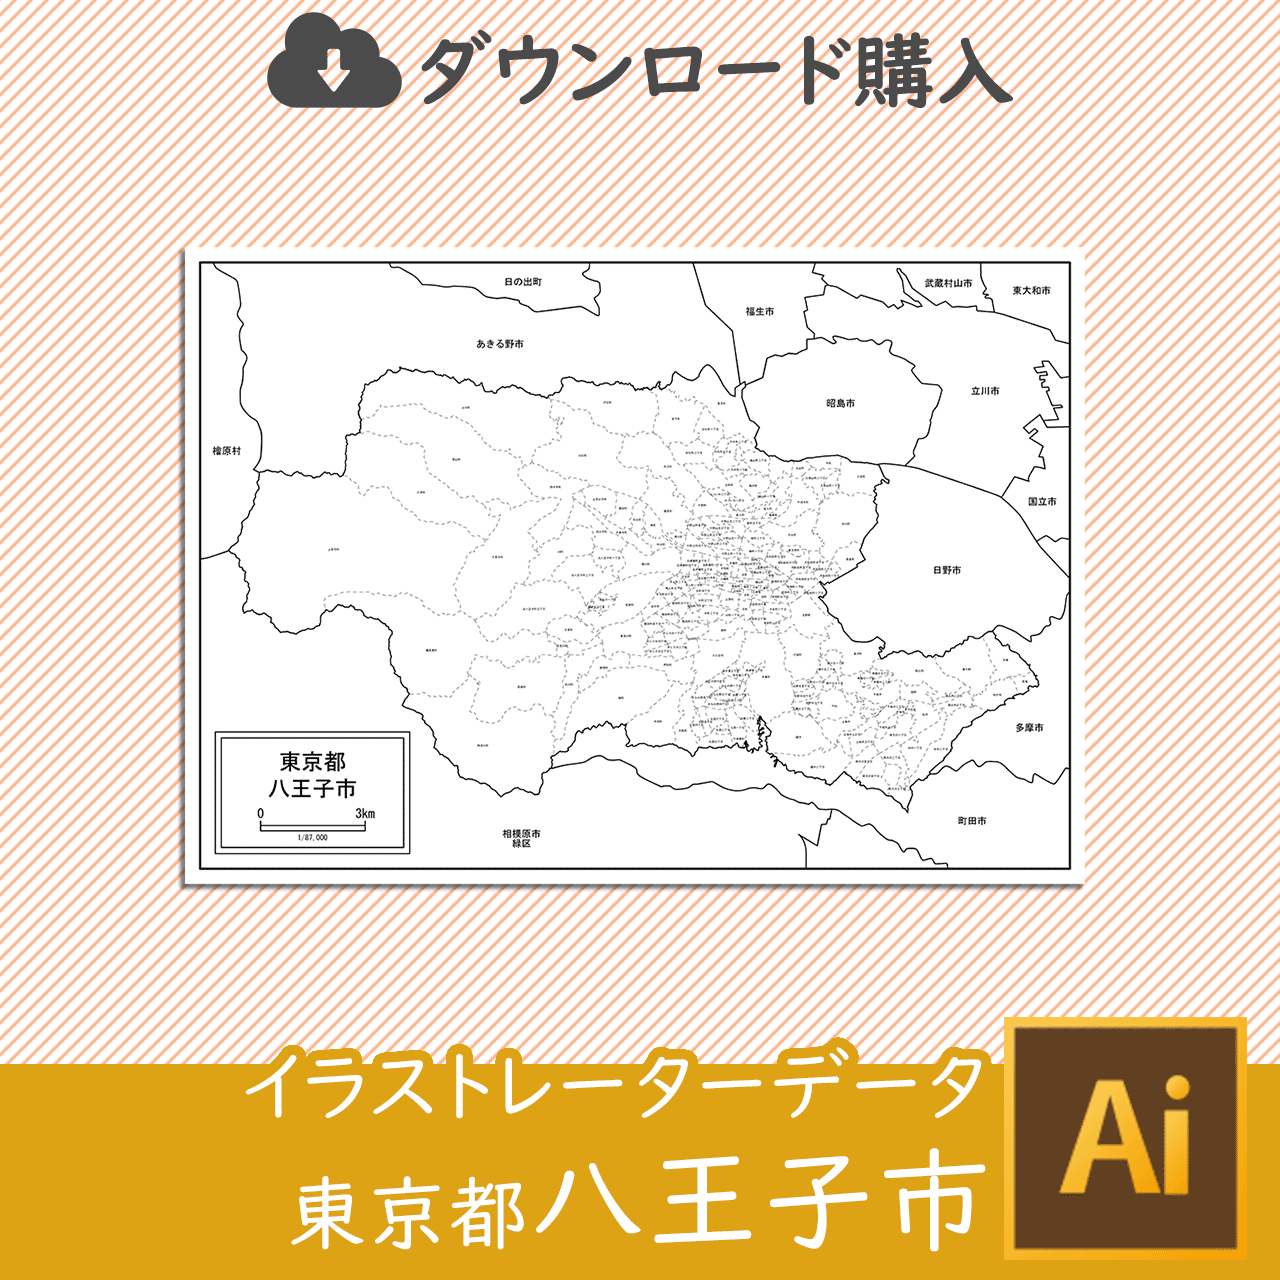 八王子市のaiデータのサムネイル画像